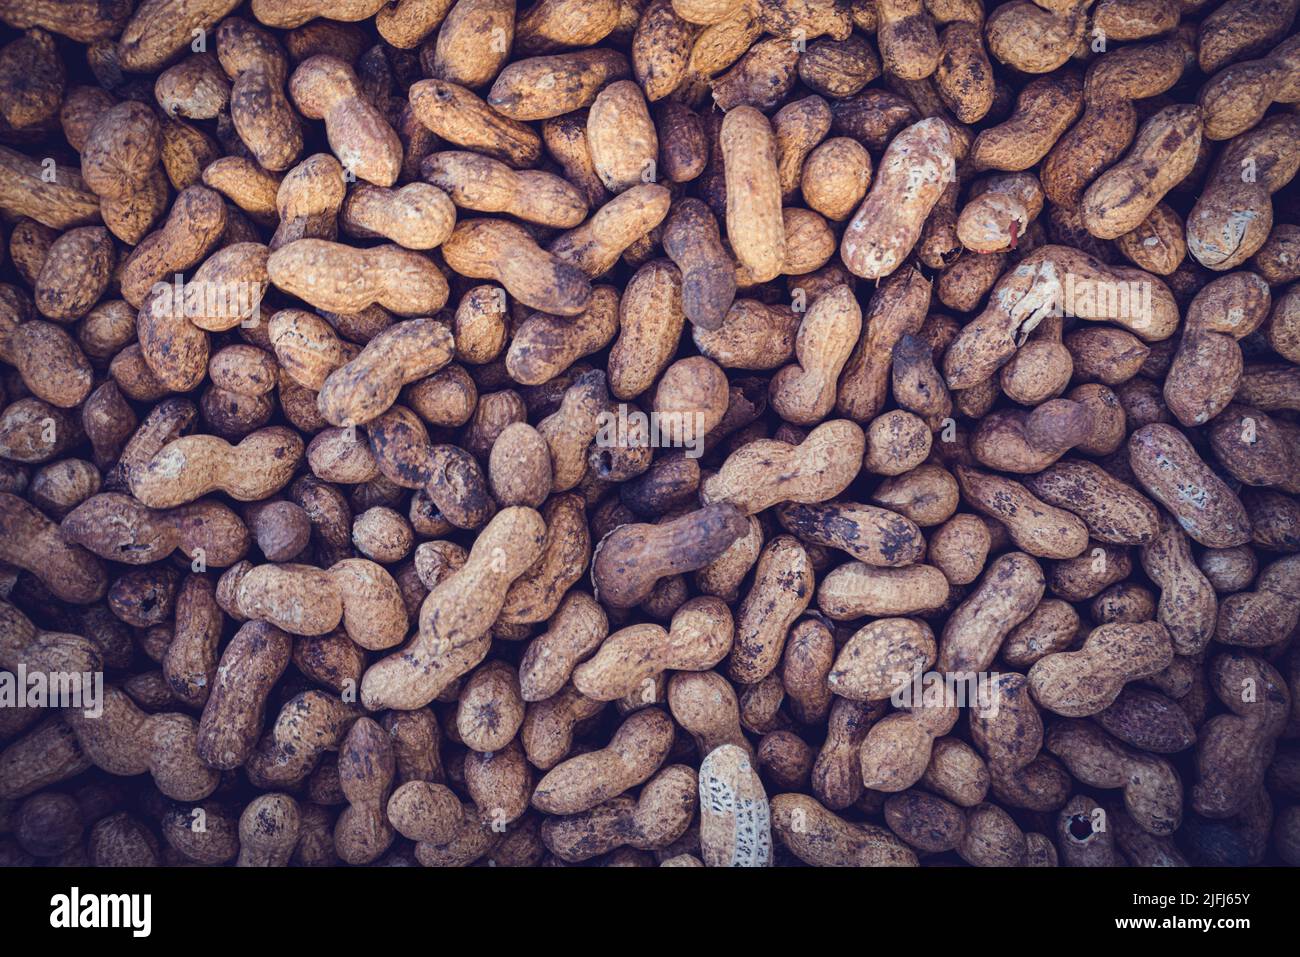 Peanut Background Texture. Roasted Peanuts Stock Photo